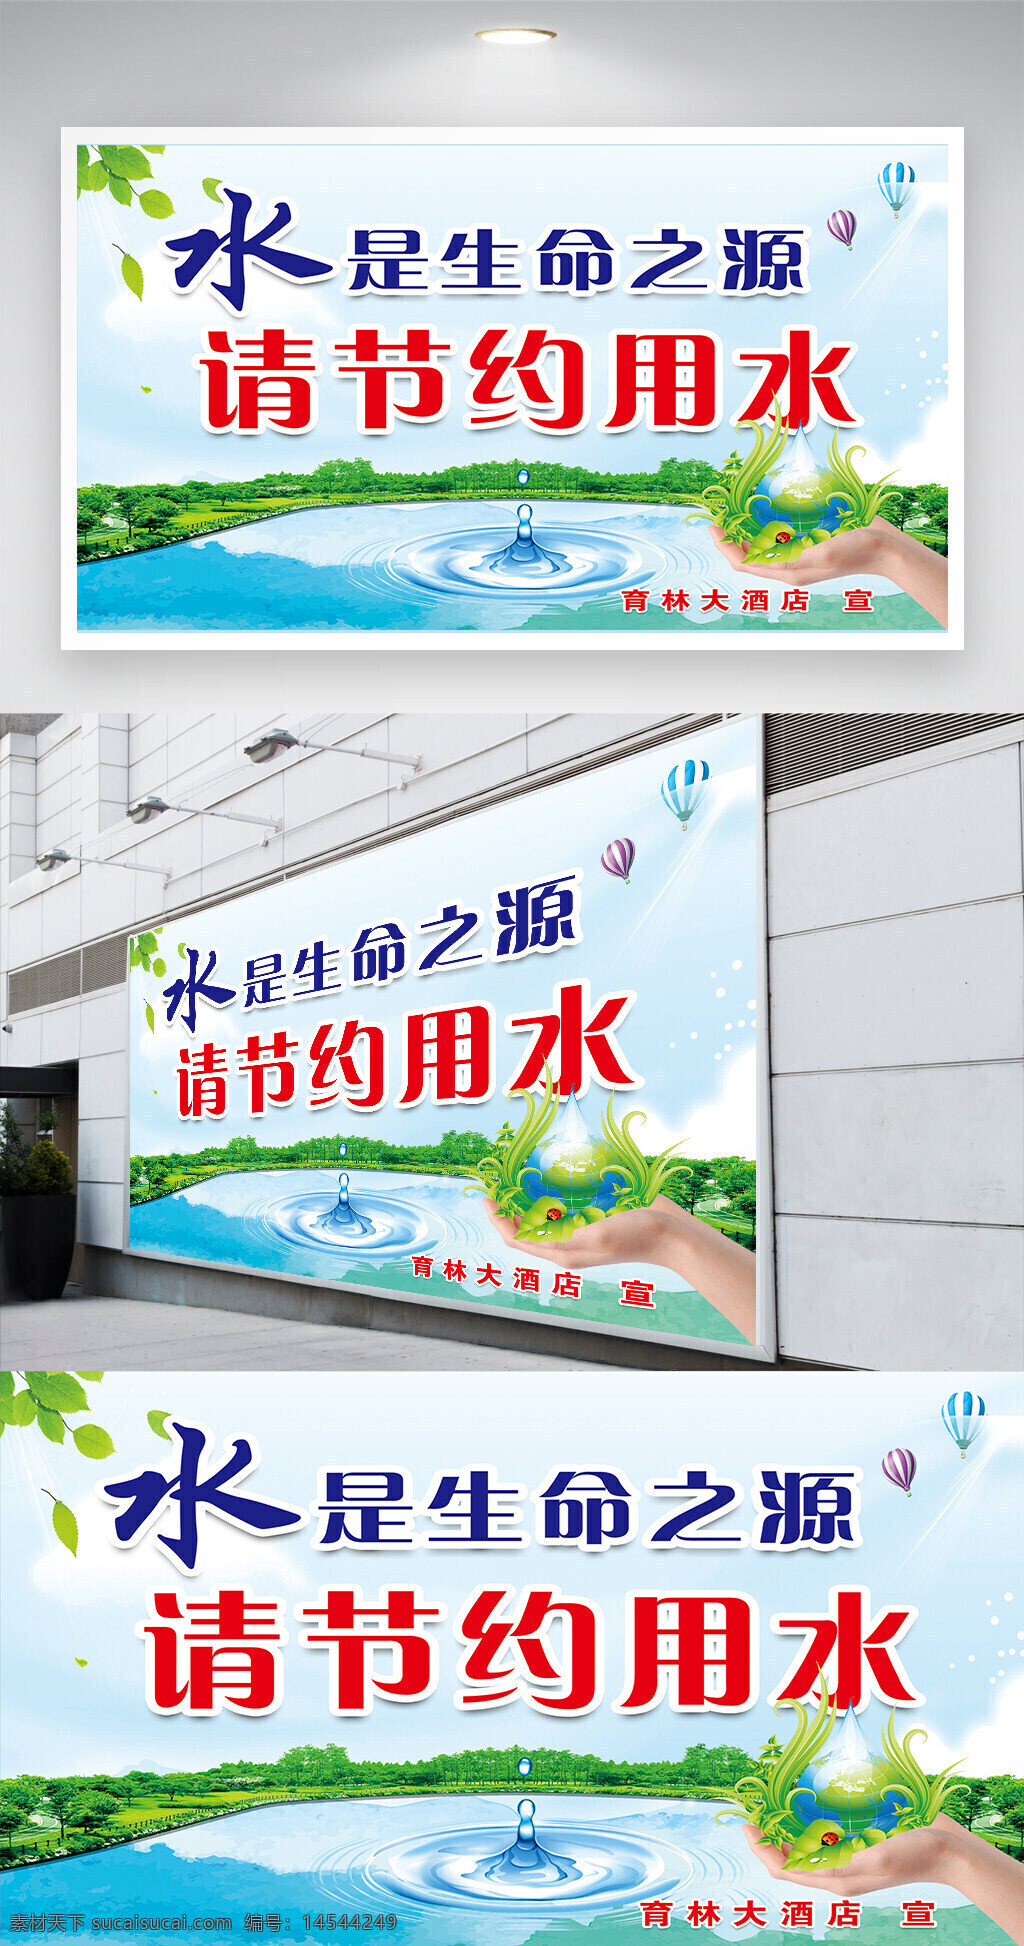 节约用水图片 展架展板 宣传栏 海报 宣传单 节约资源 爱护环境 文明健康 设计 广告设计 cdr